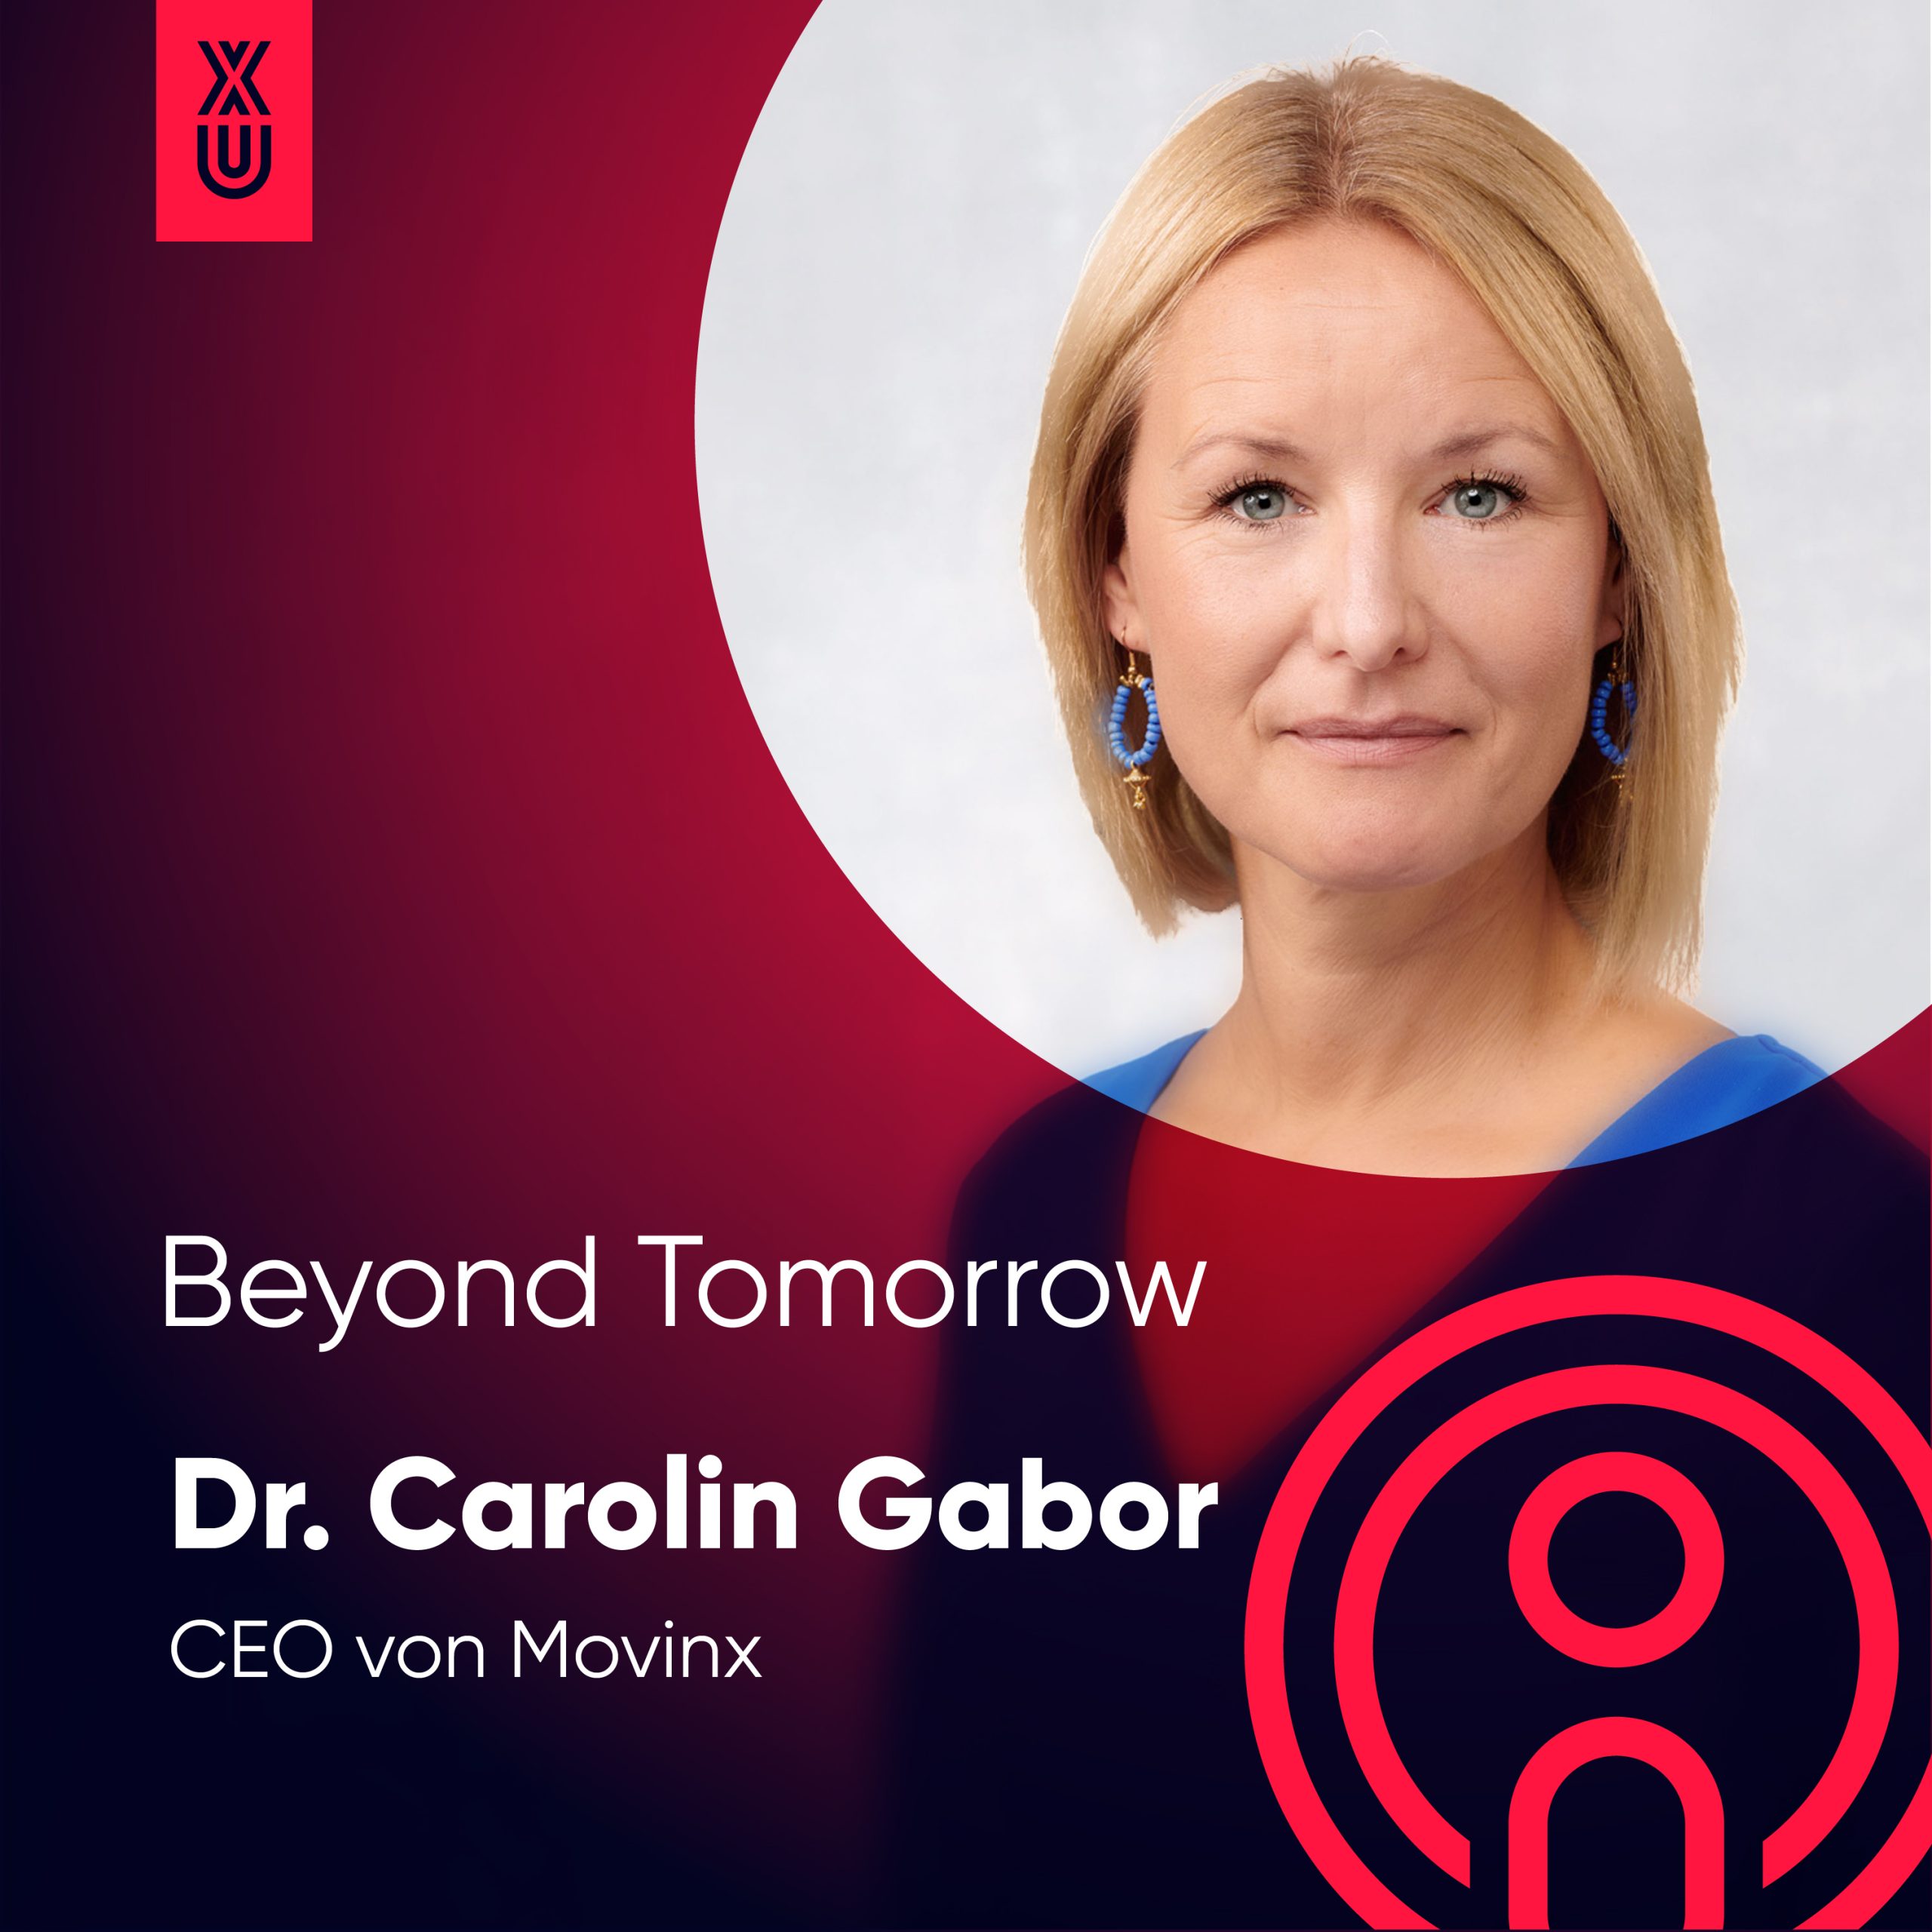 “Produktmanager sollten Mini- Geschäftsführer sein“ mit Carolin Gabor